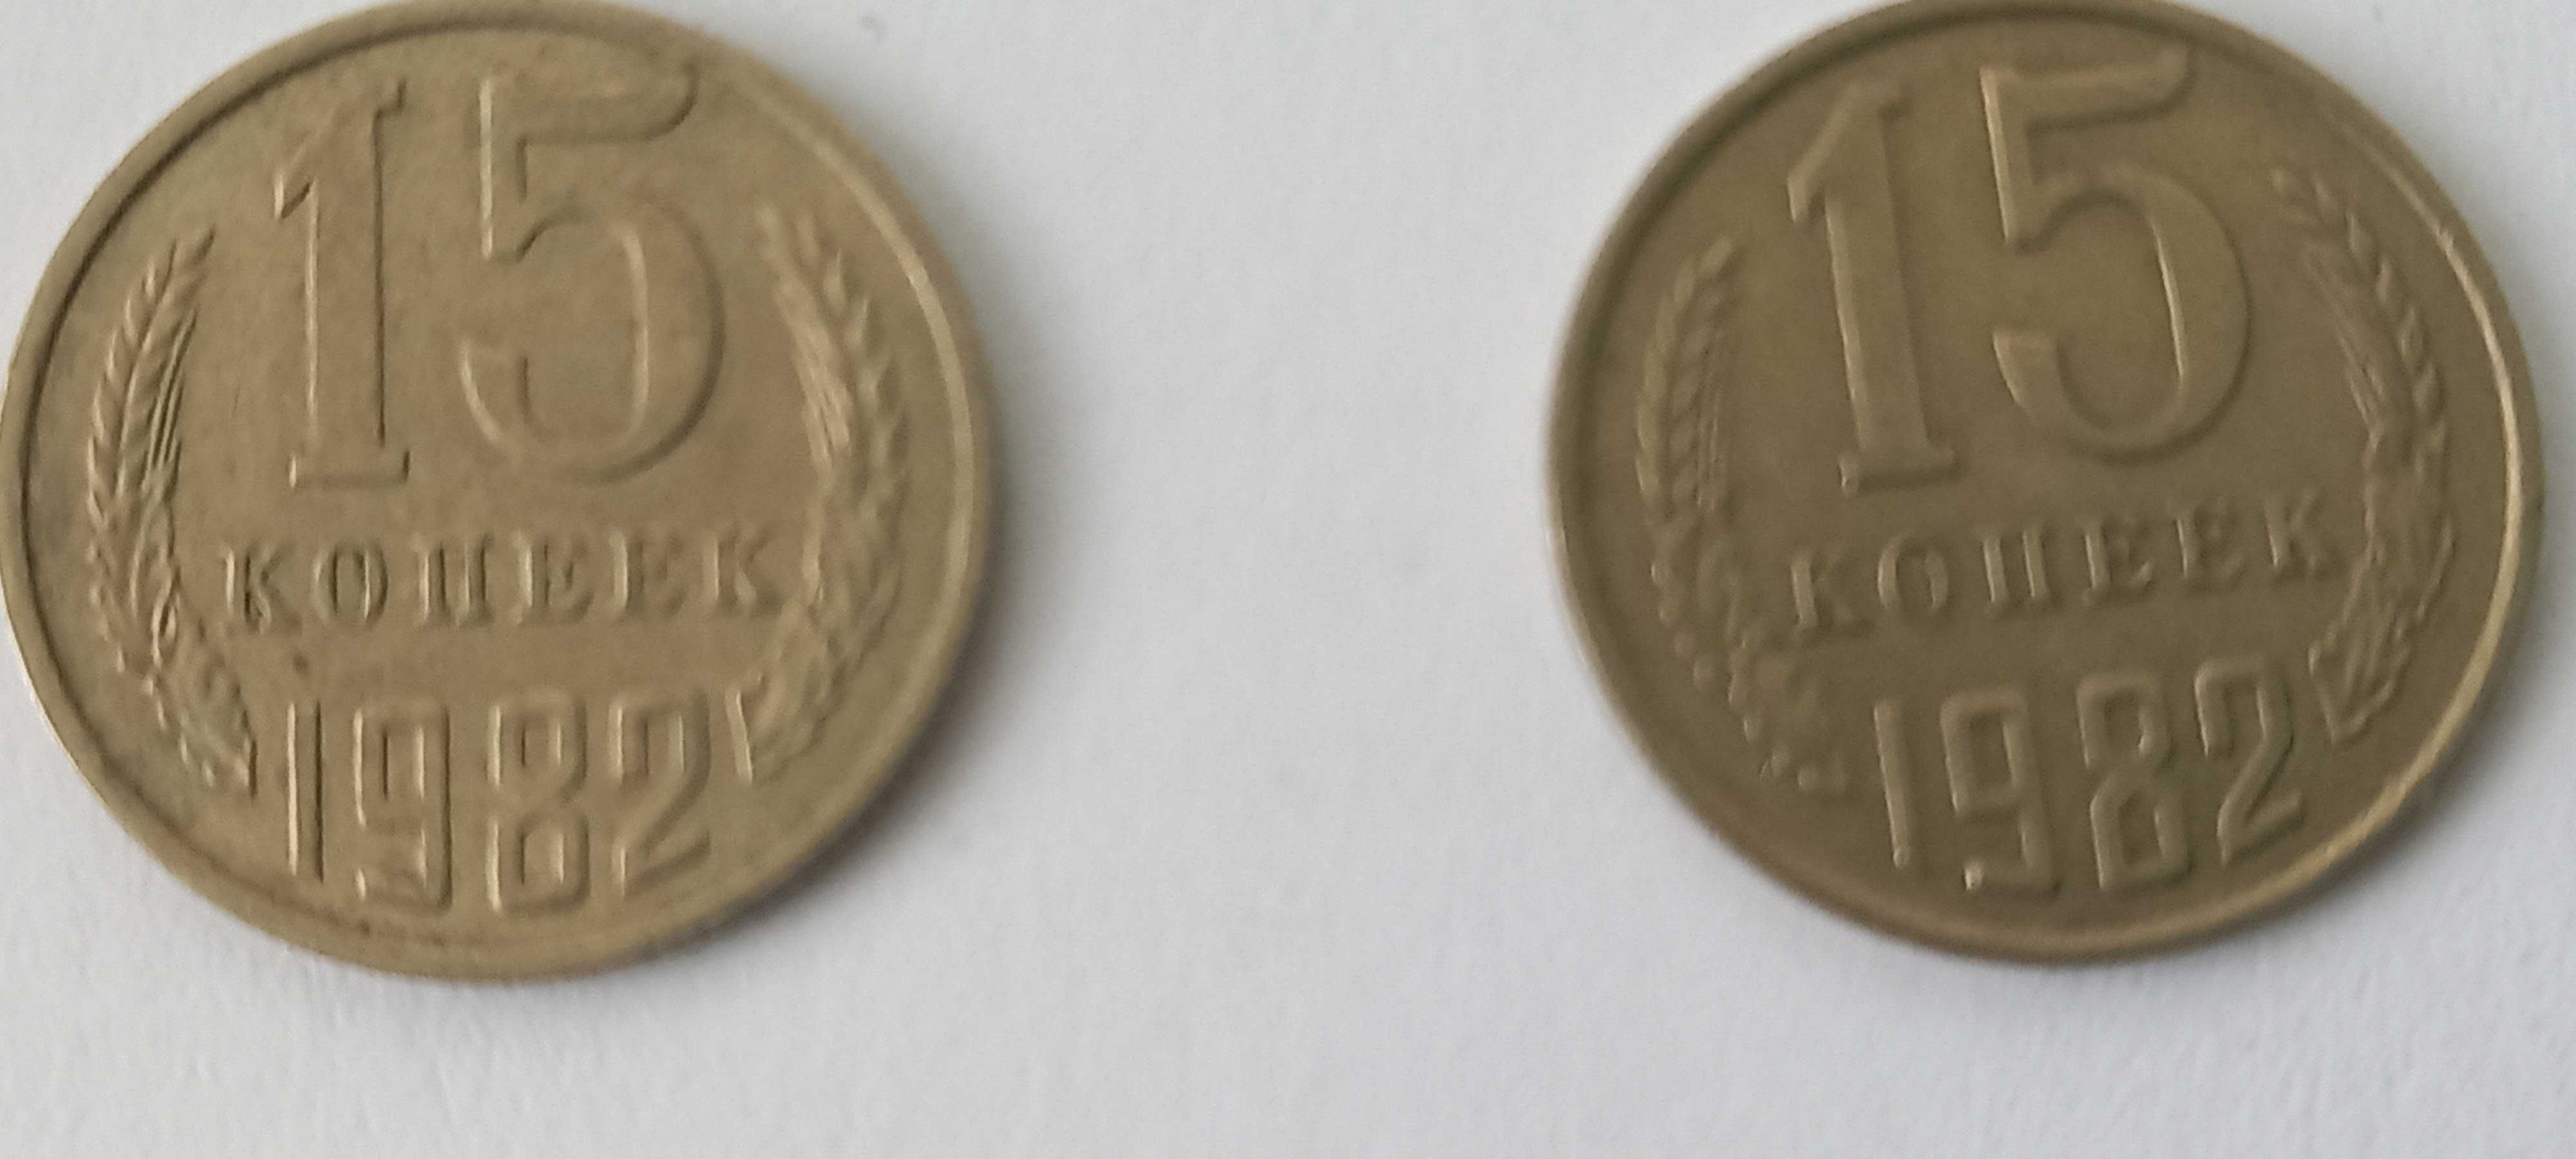 Монеты 15копеек 1982 года, колосья без остей